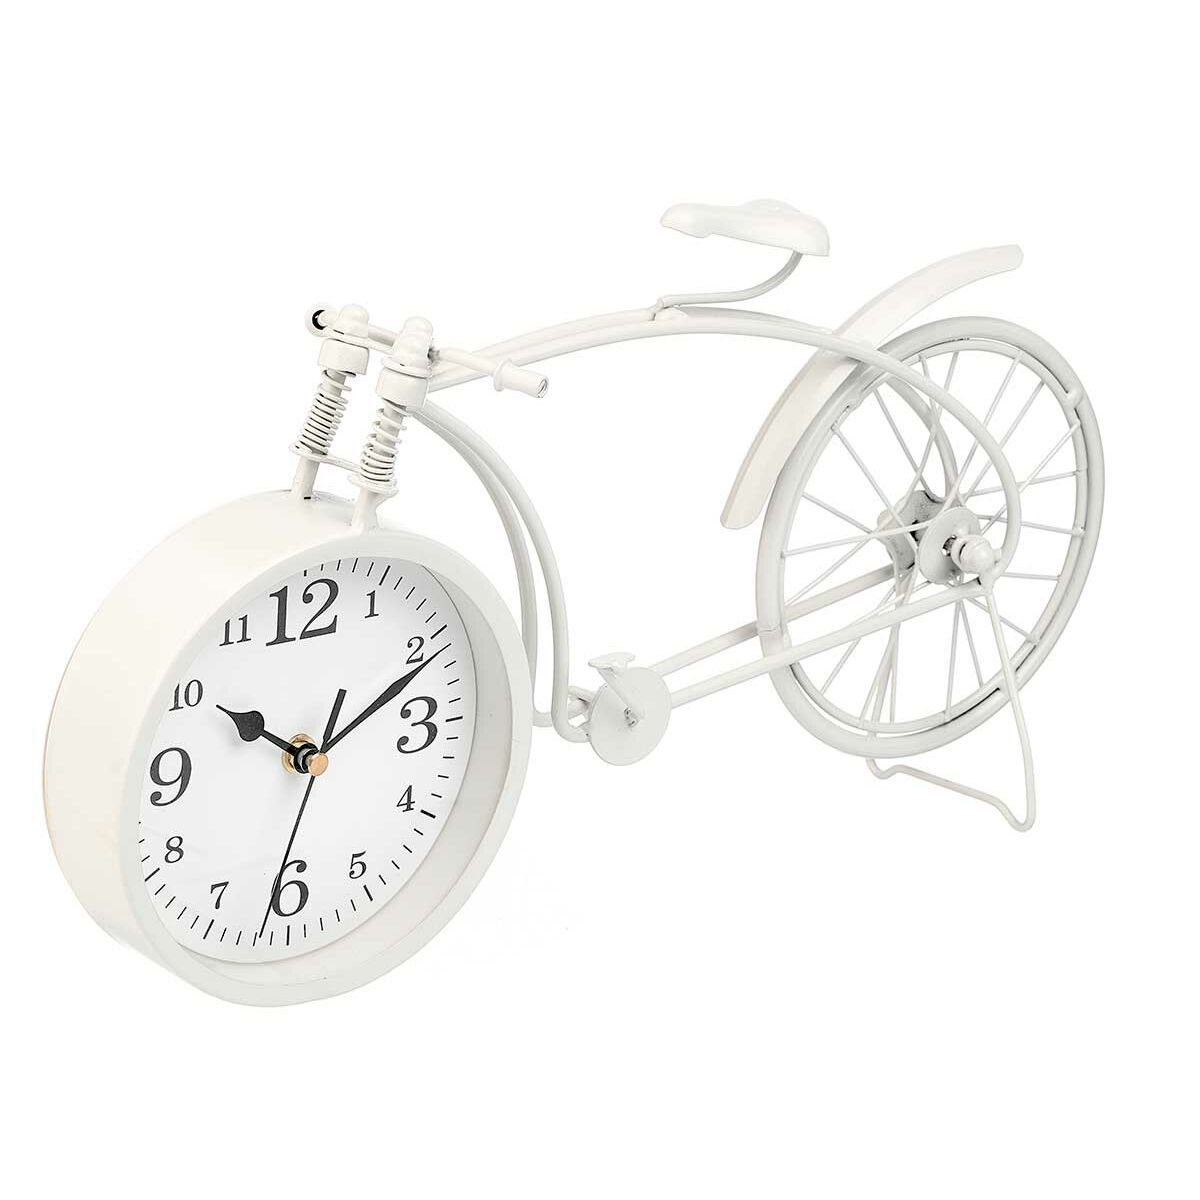 x cm Metall x Fahrrad Decor 38 Gift Uhr Weiß 4 4 20 Tischuhr Stück